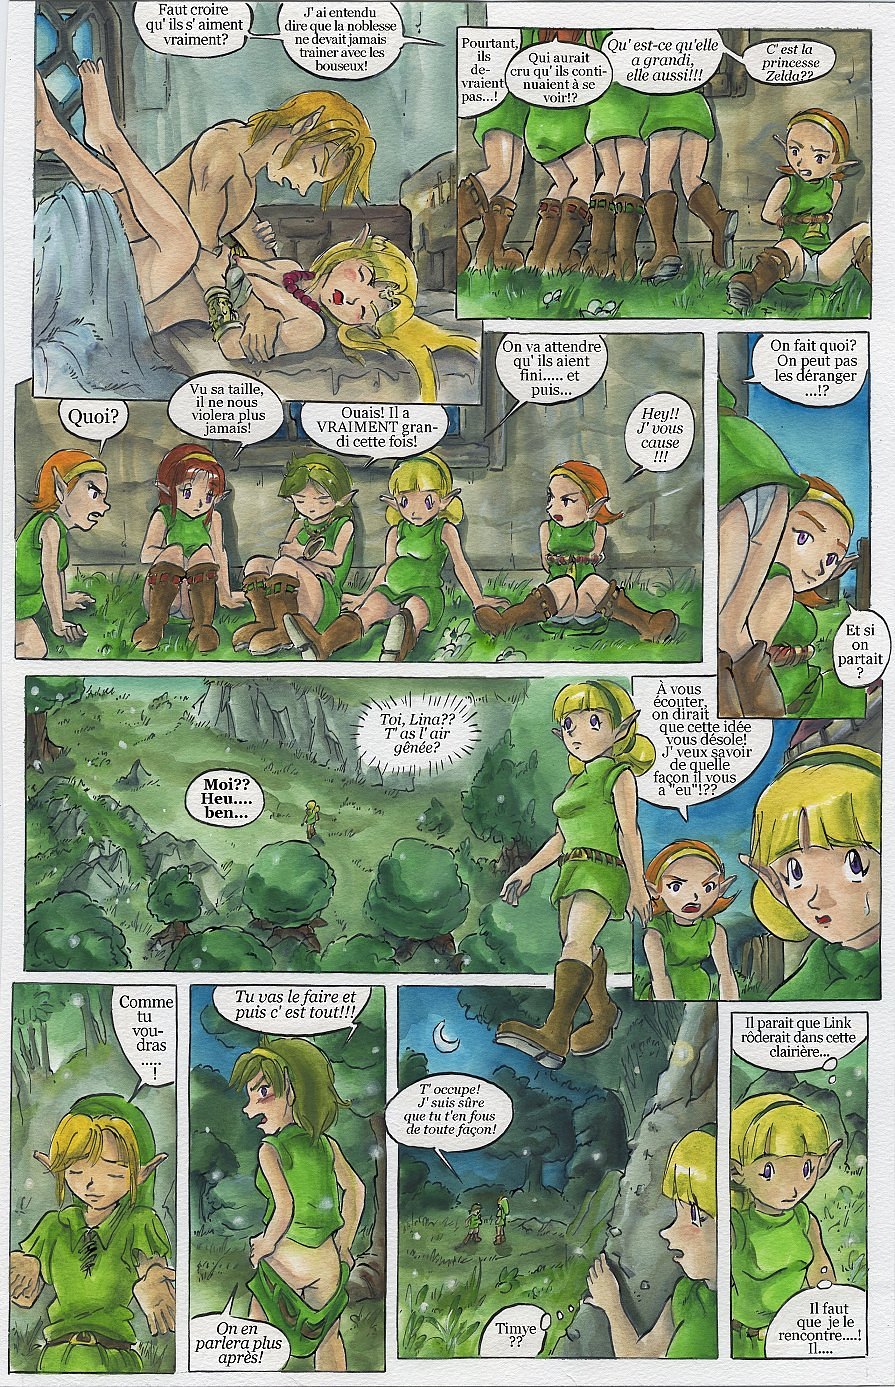 Bad Zelda 2 (The Legend of Zelda) [3] [VF]